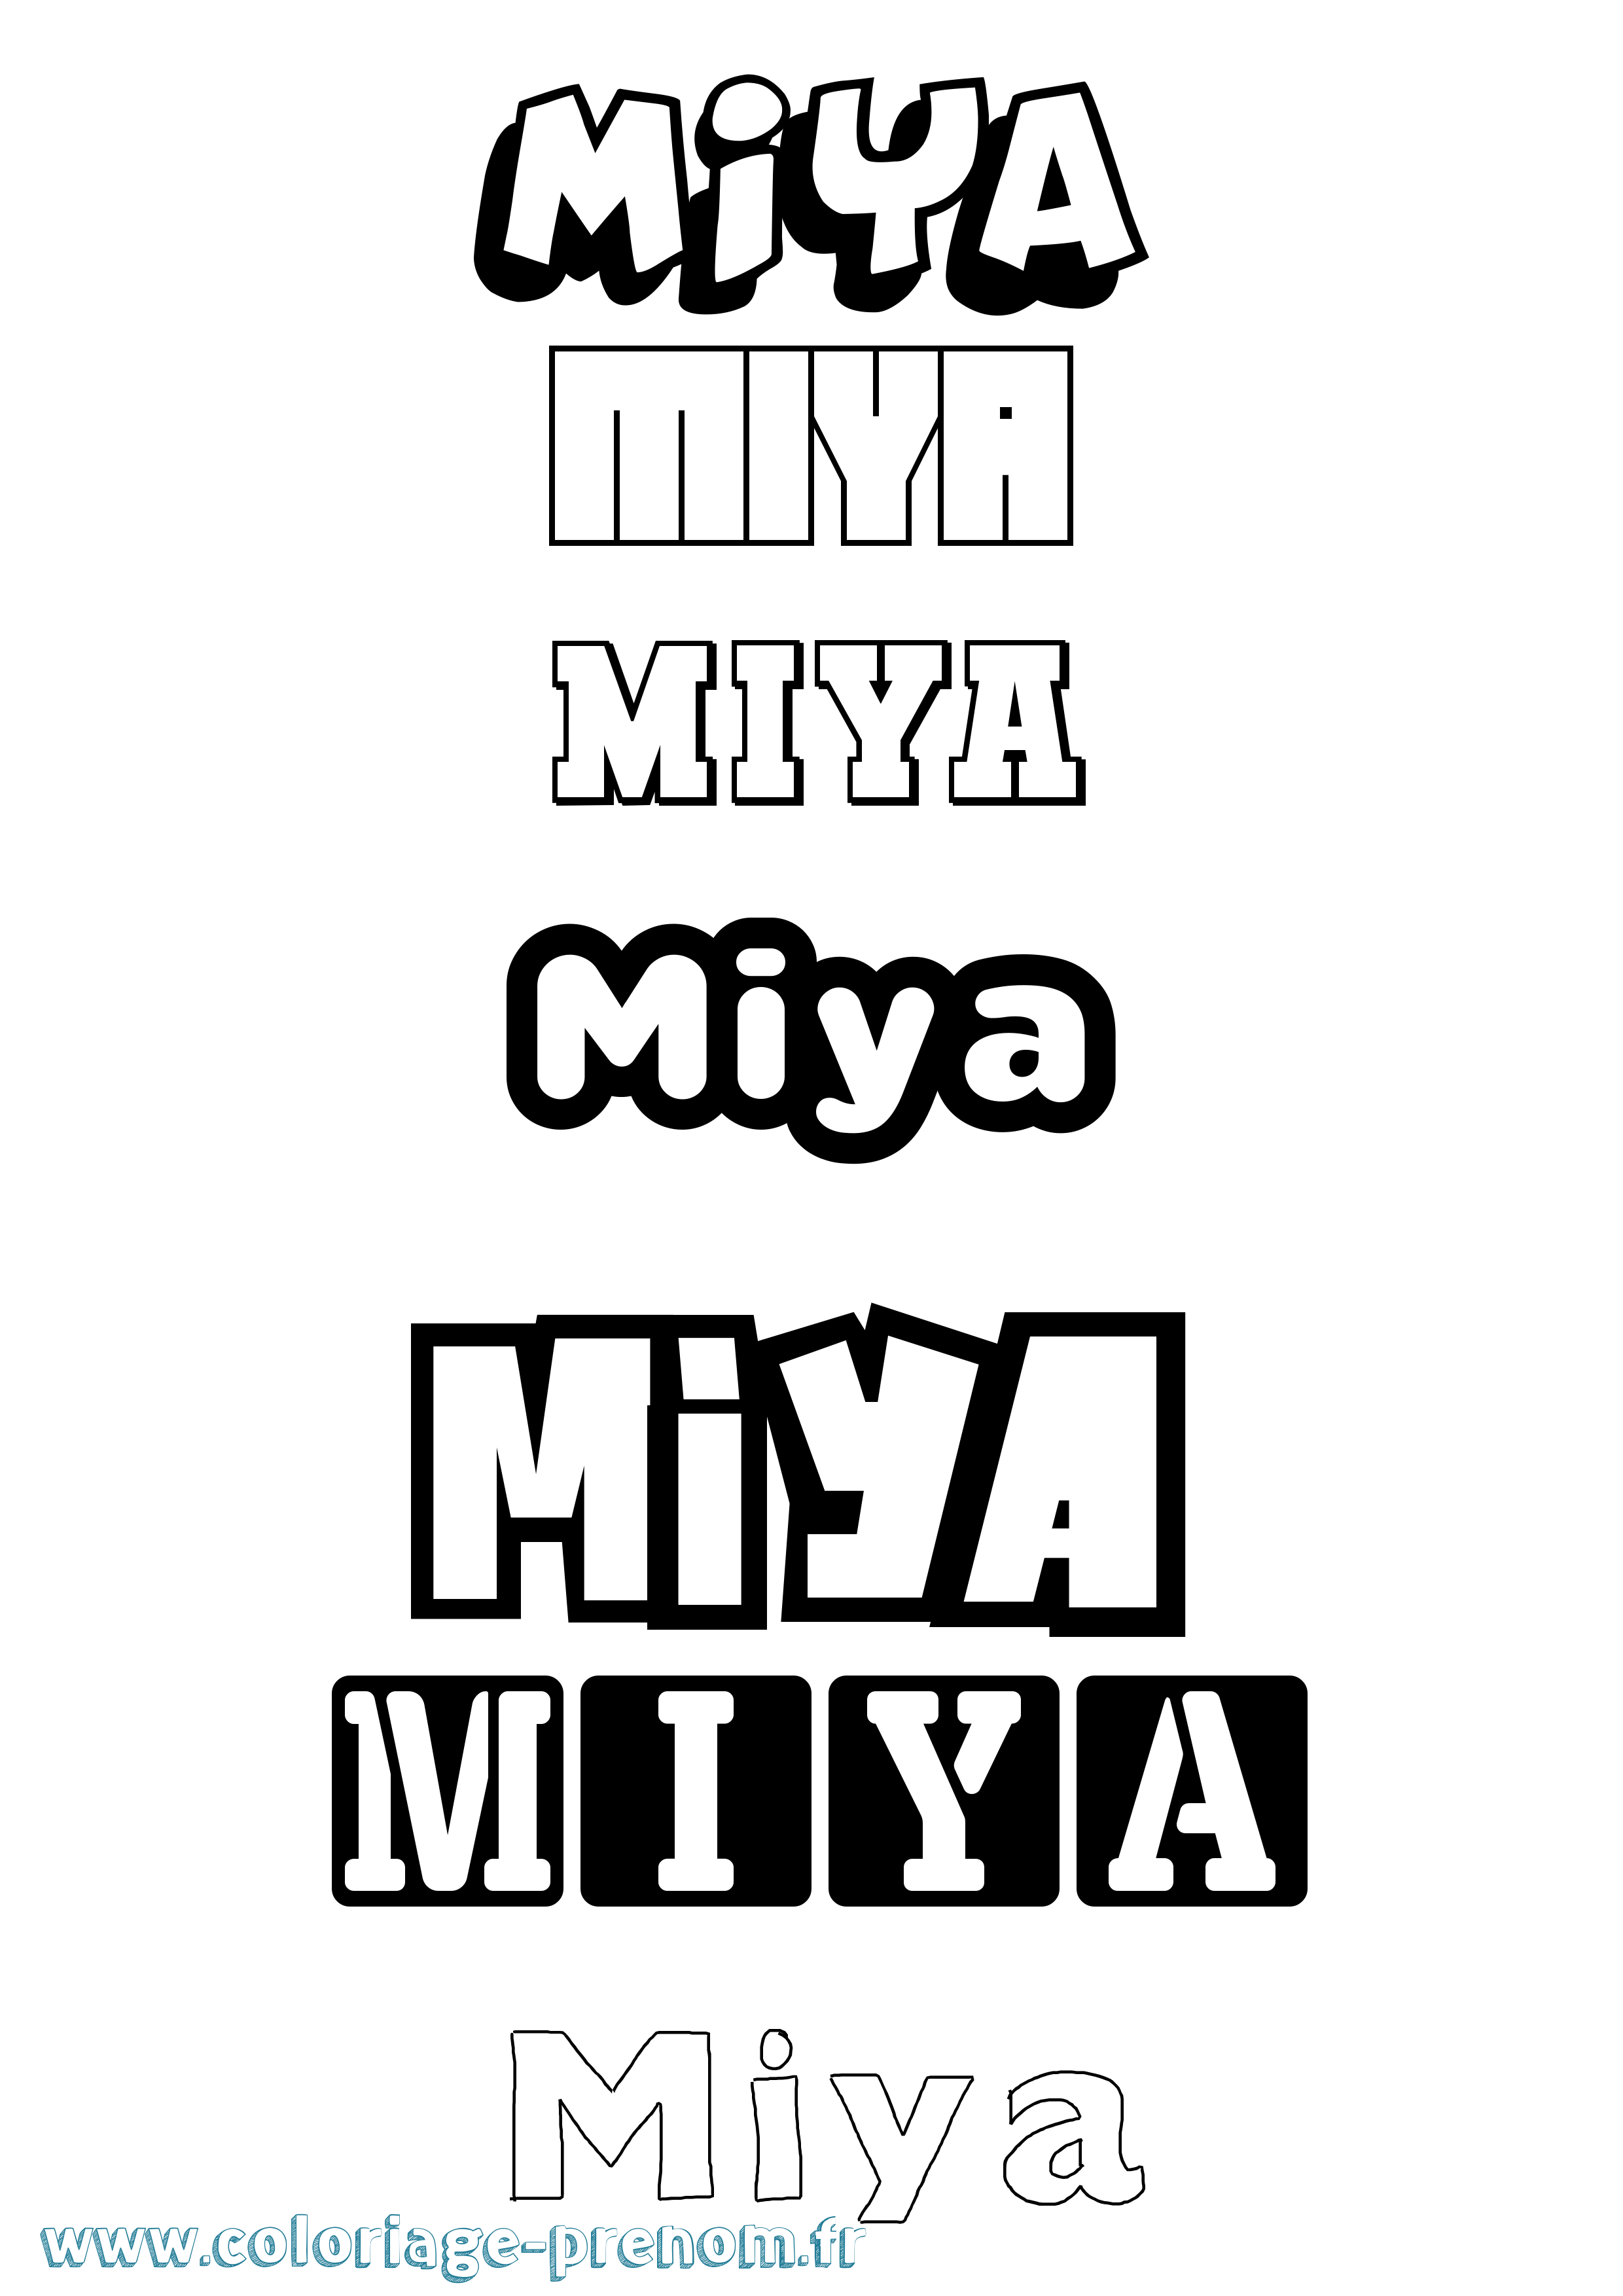 Coloriage prénom Miya